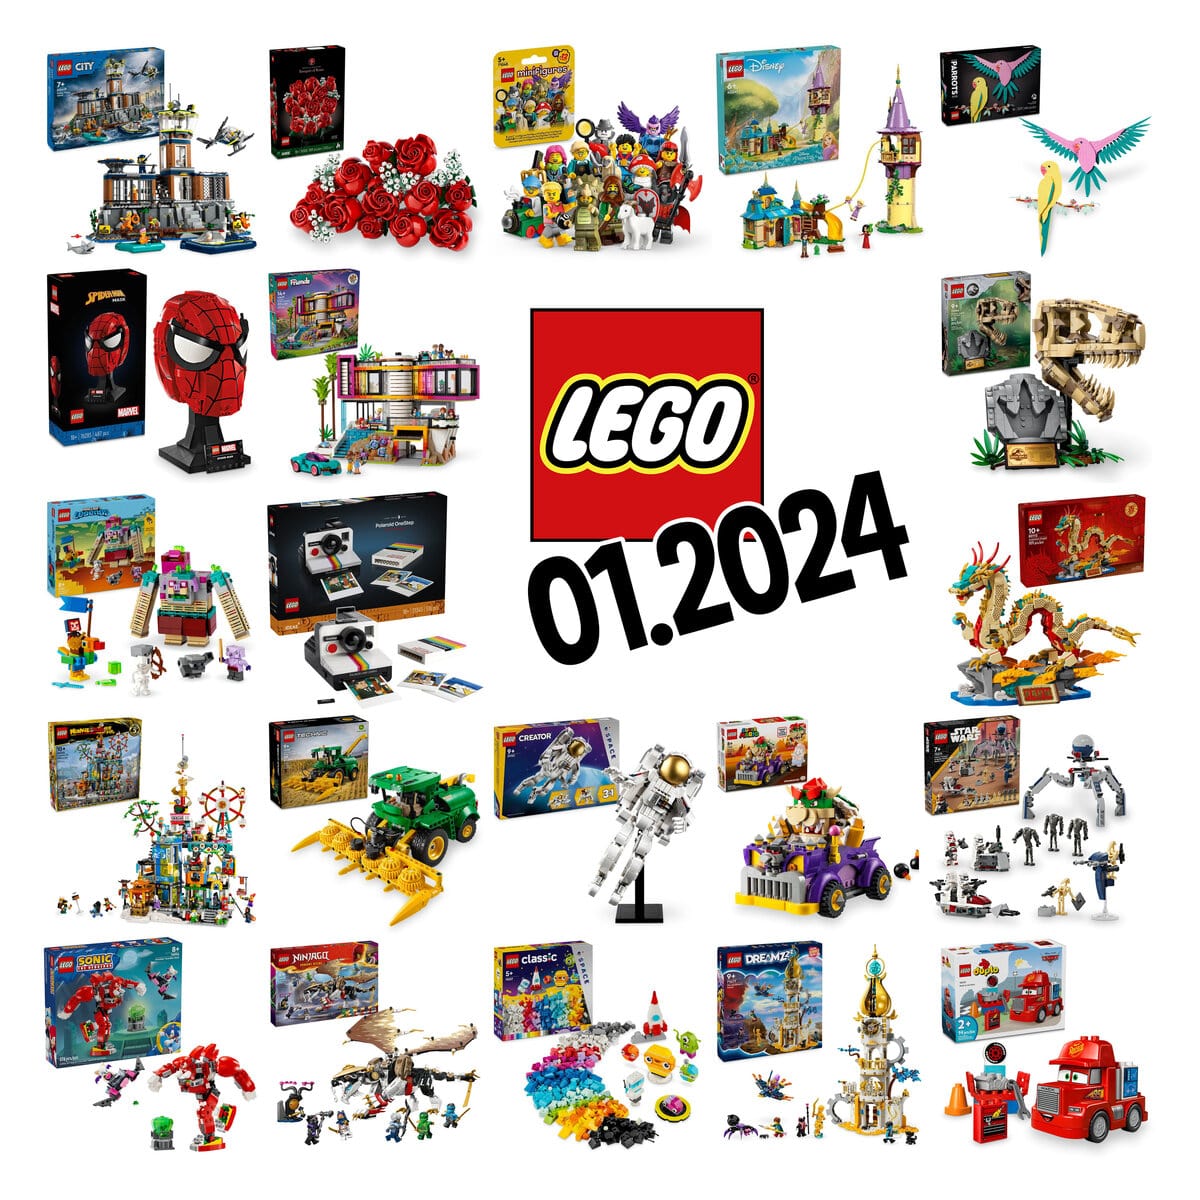 Aperçu des nouveaux LEGO Nouvel An Chinois de Janvier 2024